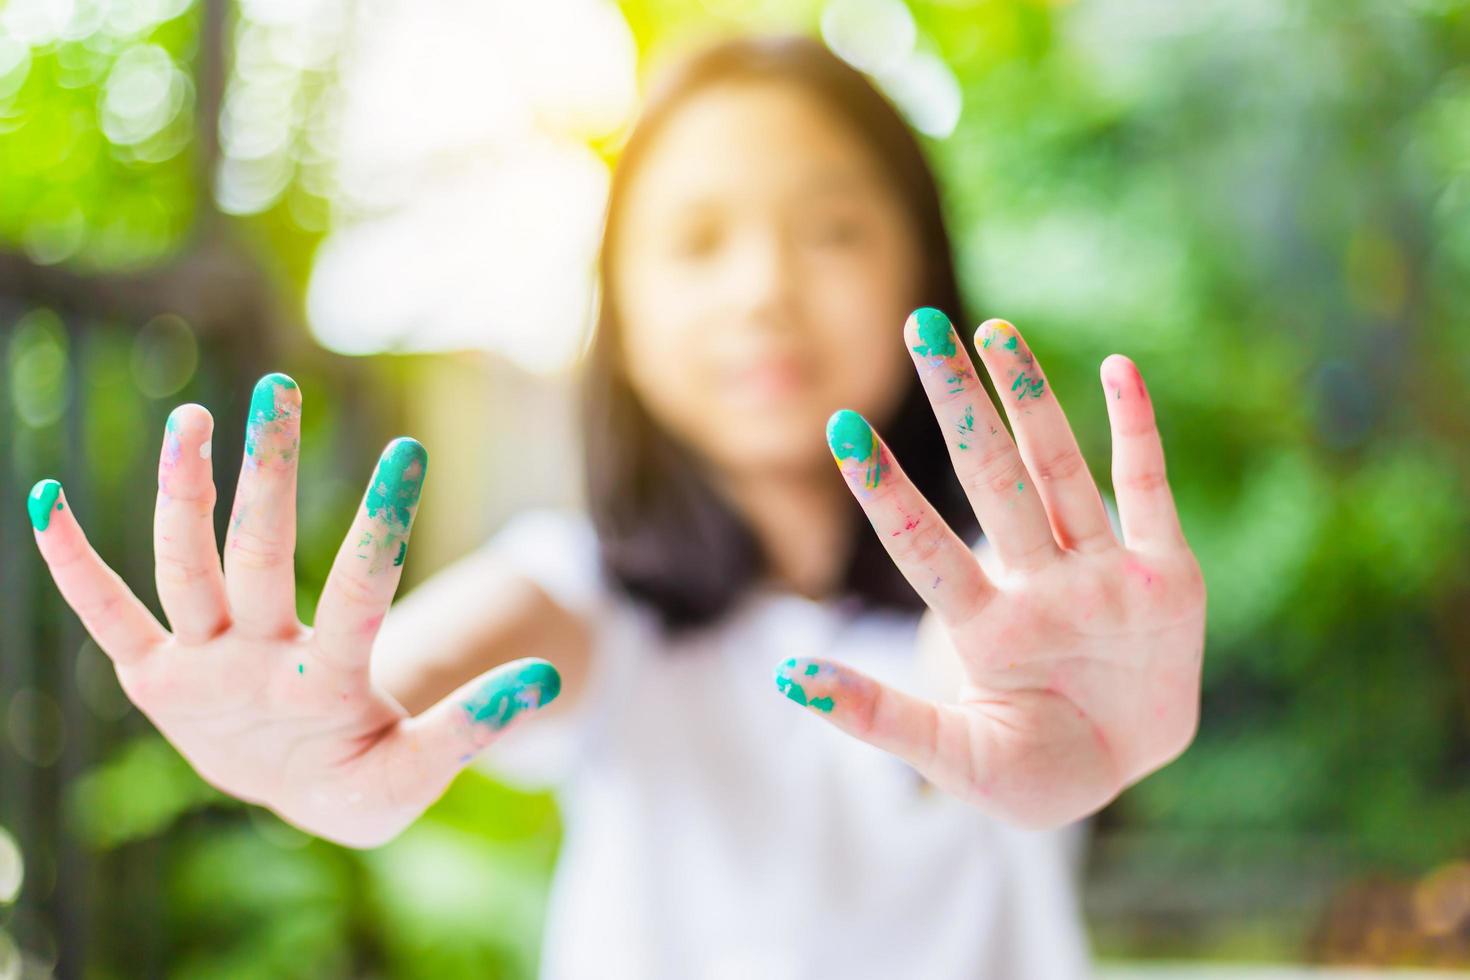 drôle d'enfant fille montre les mains sales avec de la peinture, joyeuse petite fille mignonne jouant et apprenant à colorier les couleurs photo